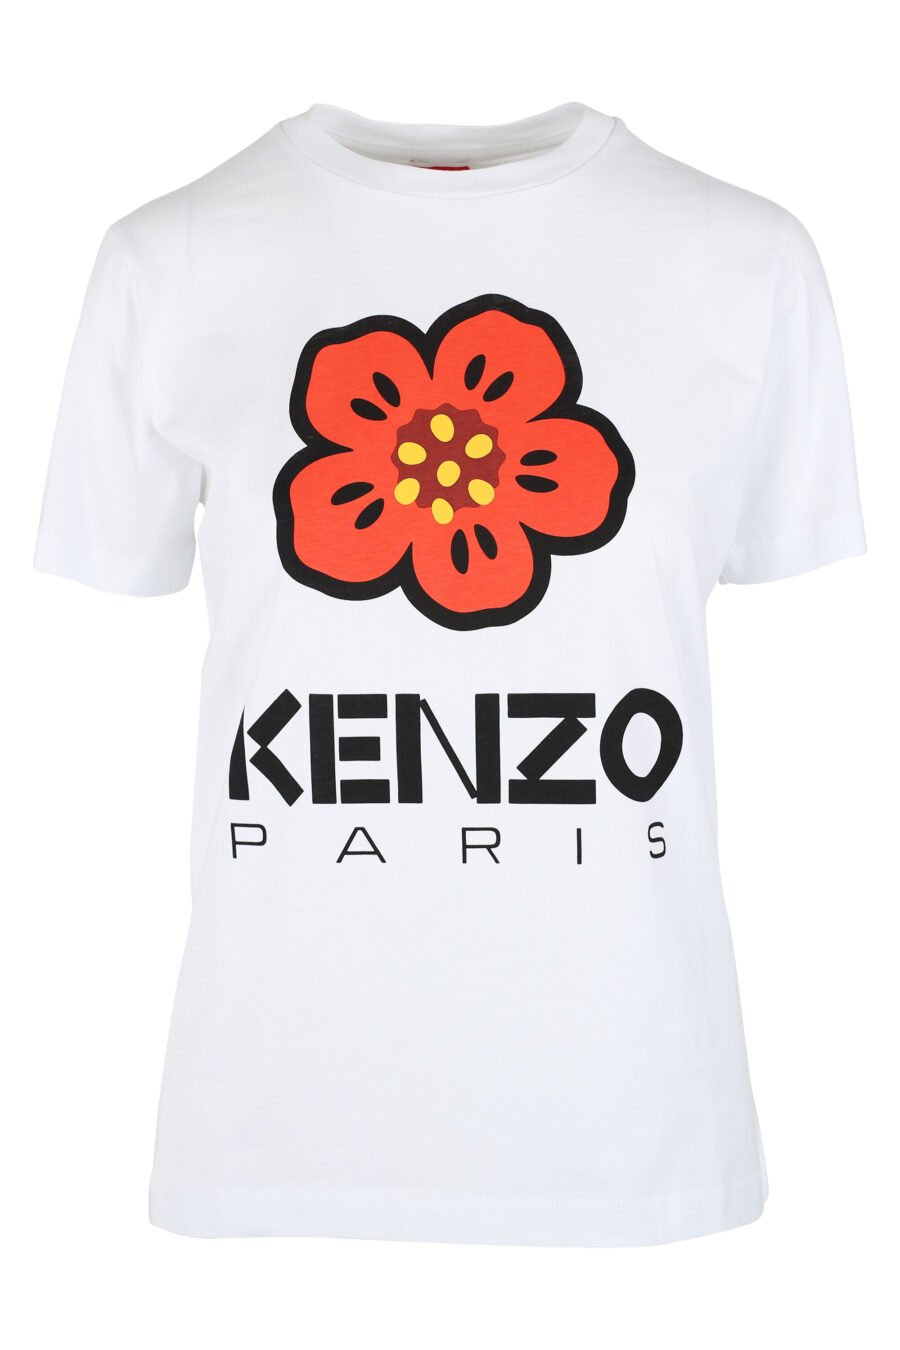 Camiseta blanca con maxilogo flor naranja - IMG 9528